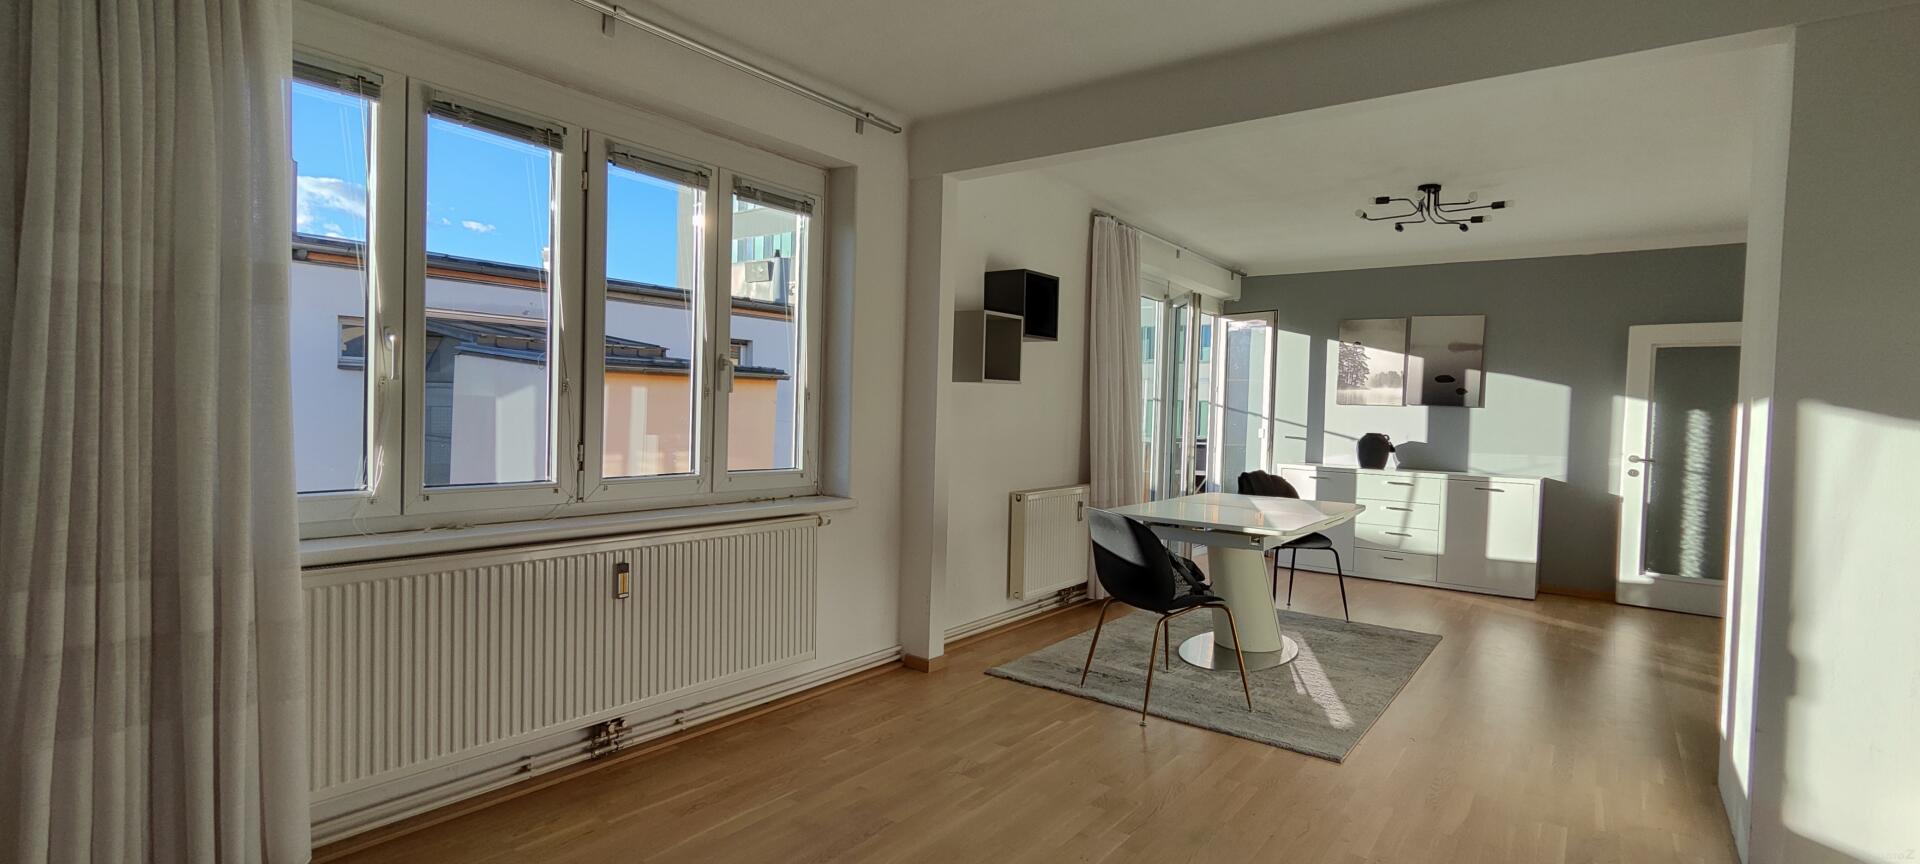 Wohnung zu kaufen: 8020 Graz - offener, heller Wohnraum mit Balkon